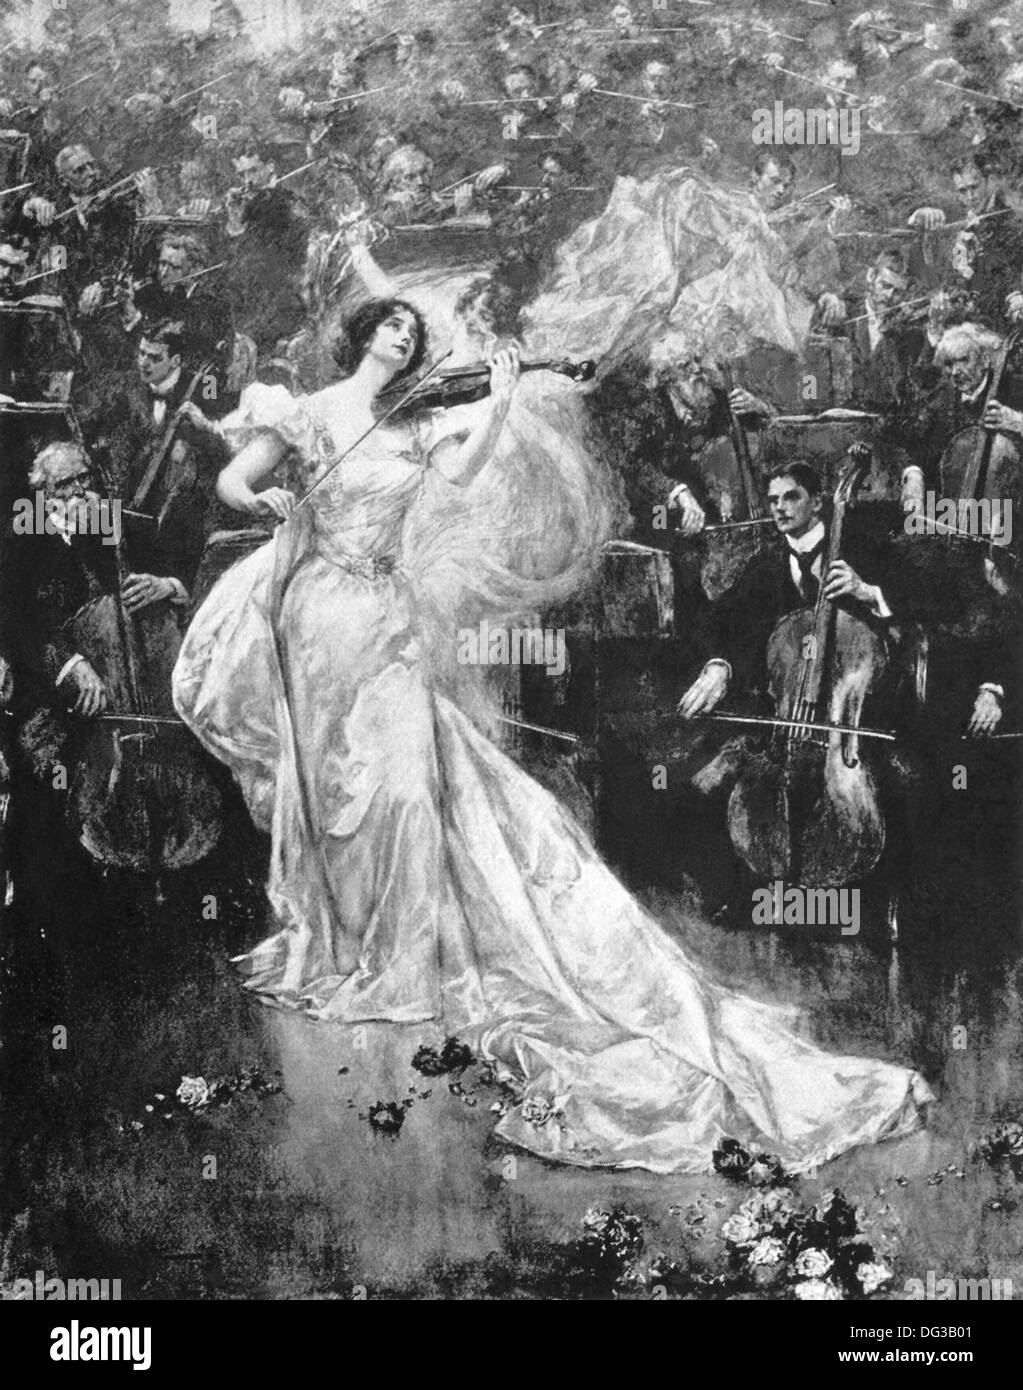 Cette illustration, publié à Londres, de l'Annuel 1900 pictural de Penrose. Cette image montre une femme jouant un concerto pour violon. Banque D'Images